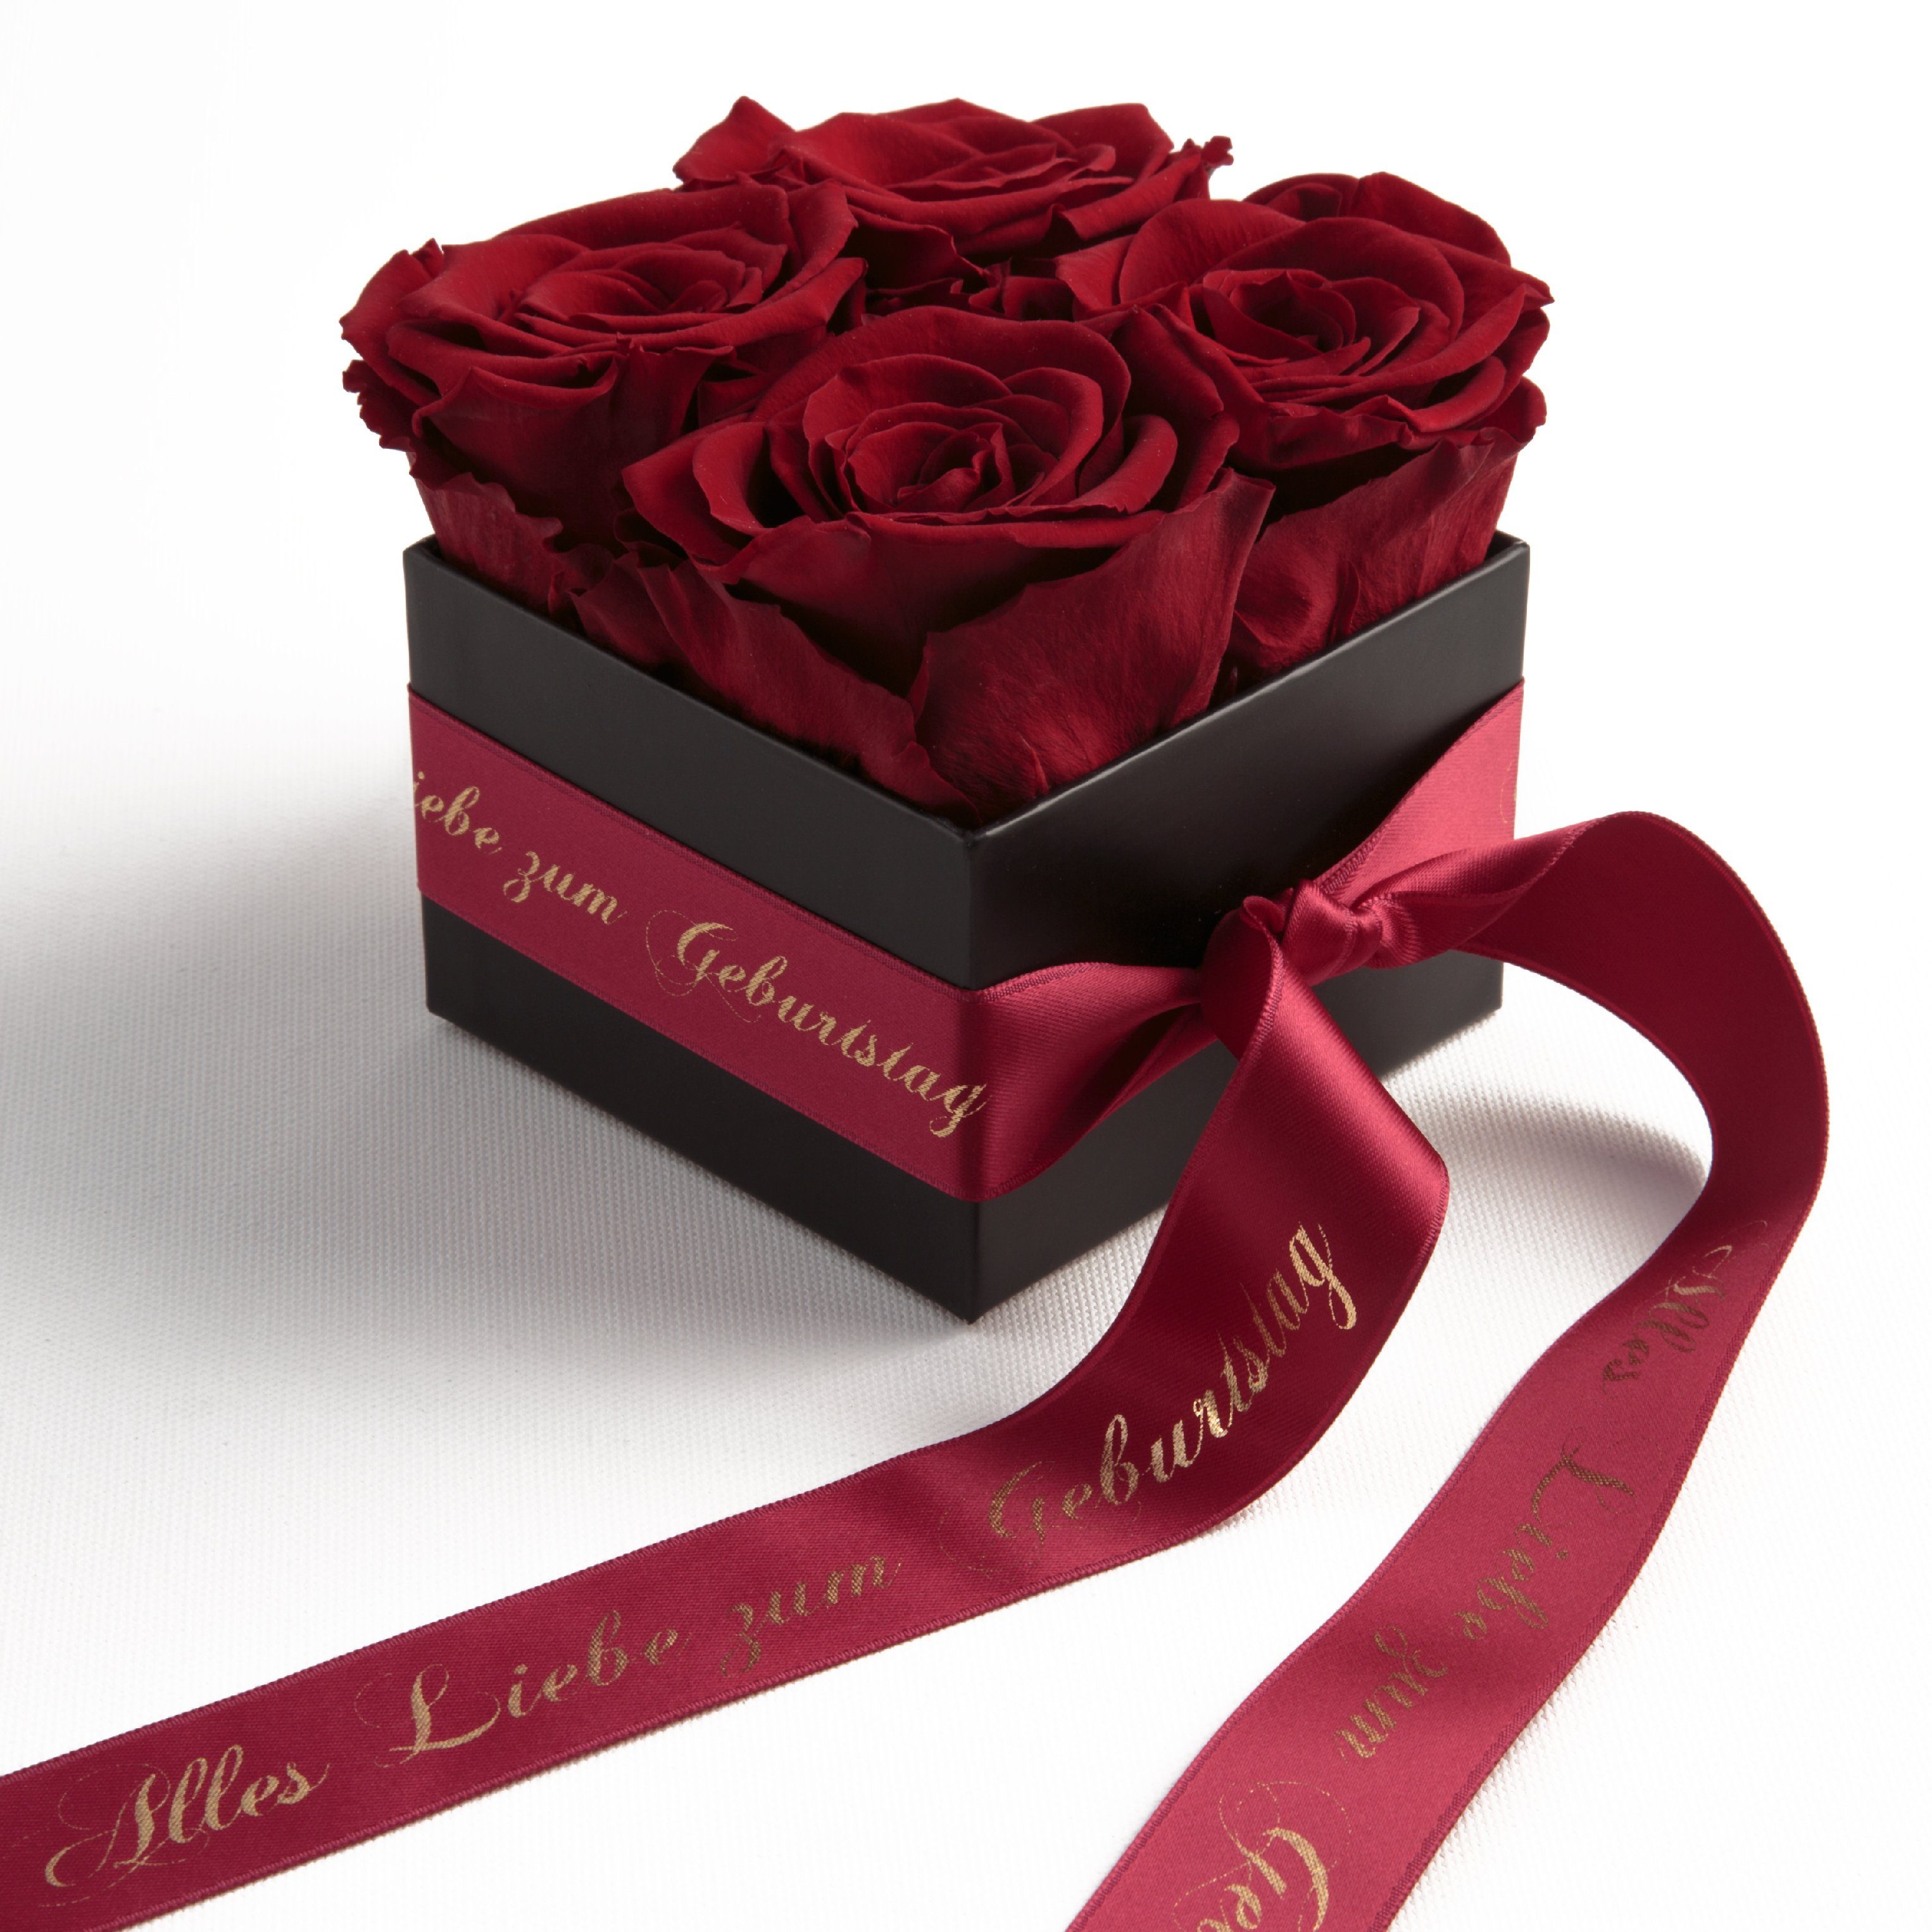 ROSEMARIE SCHULZ Dekoobjekt Rosenbox Geschenk Frauen für zum (1 St), Echte Rosen konservierte Heidelberg Liebe Geburtstag echte Alles Dunkelrot Rosen